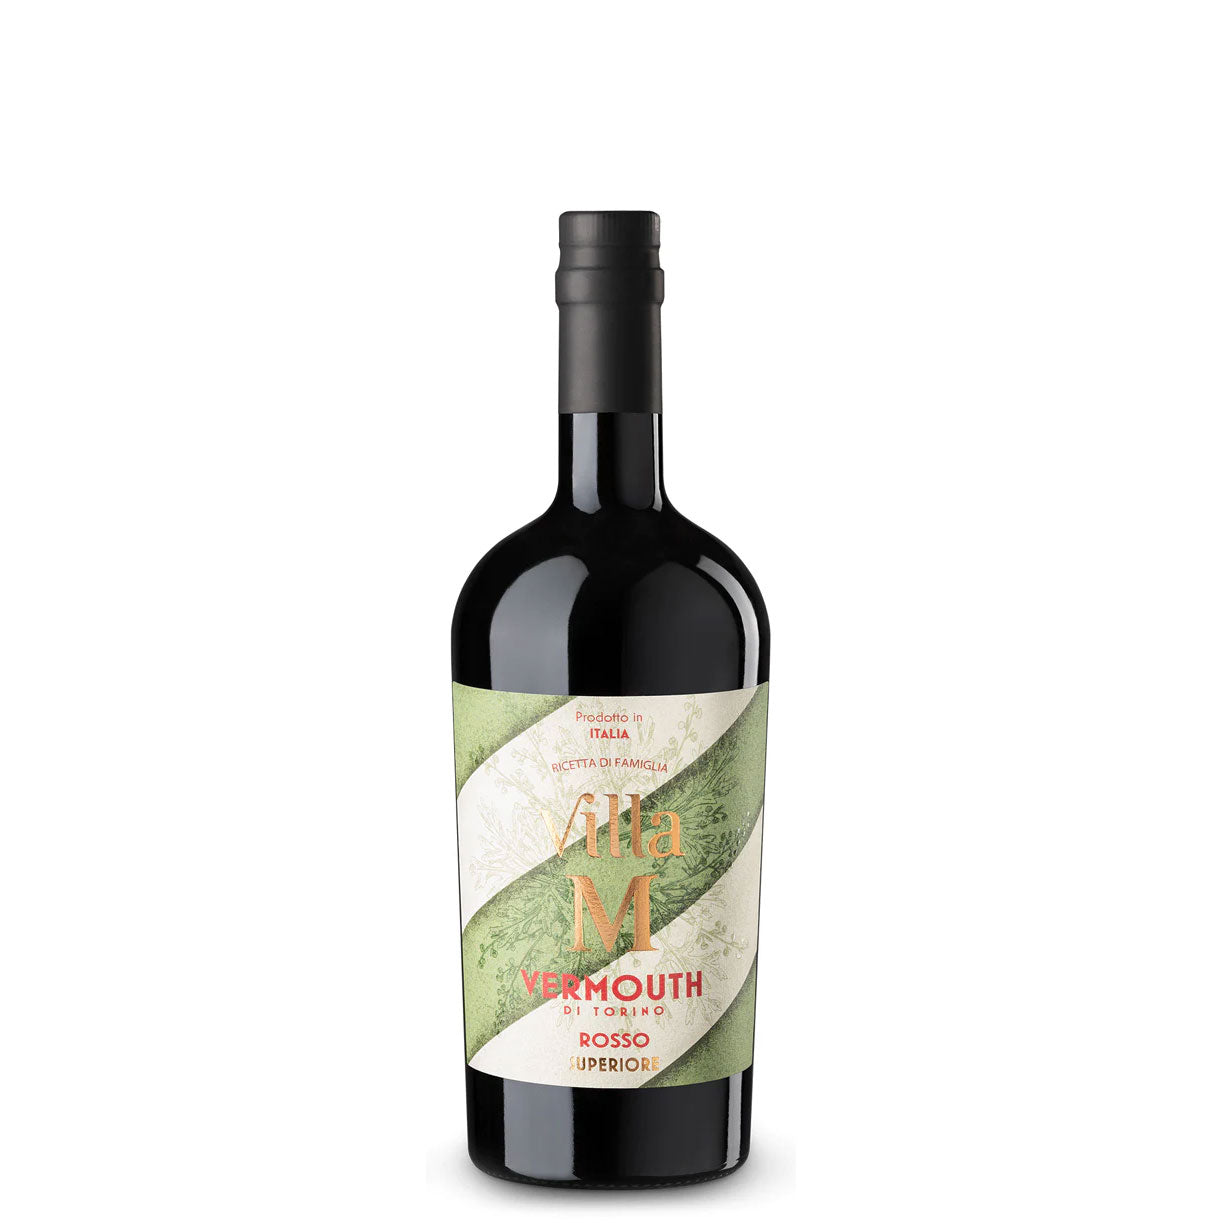 Vermouth di Torino Rosso Superiore (750ml) - Poderi Gianni Gagliardo